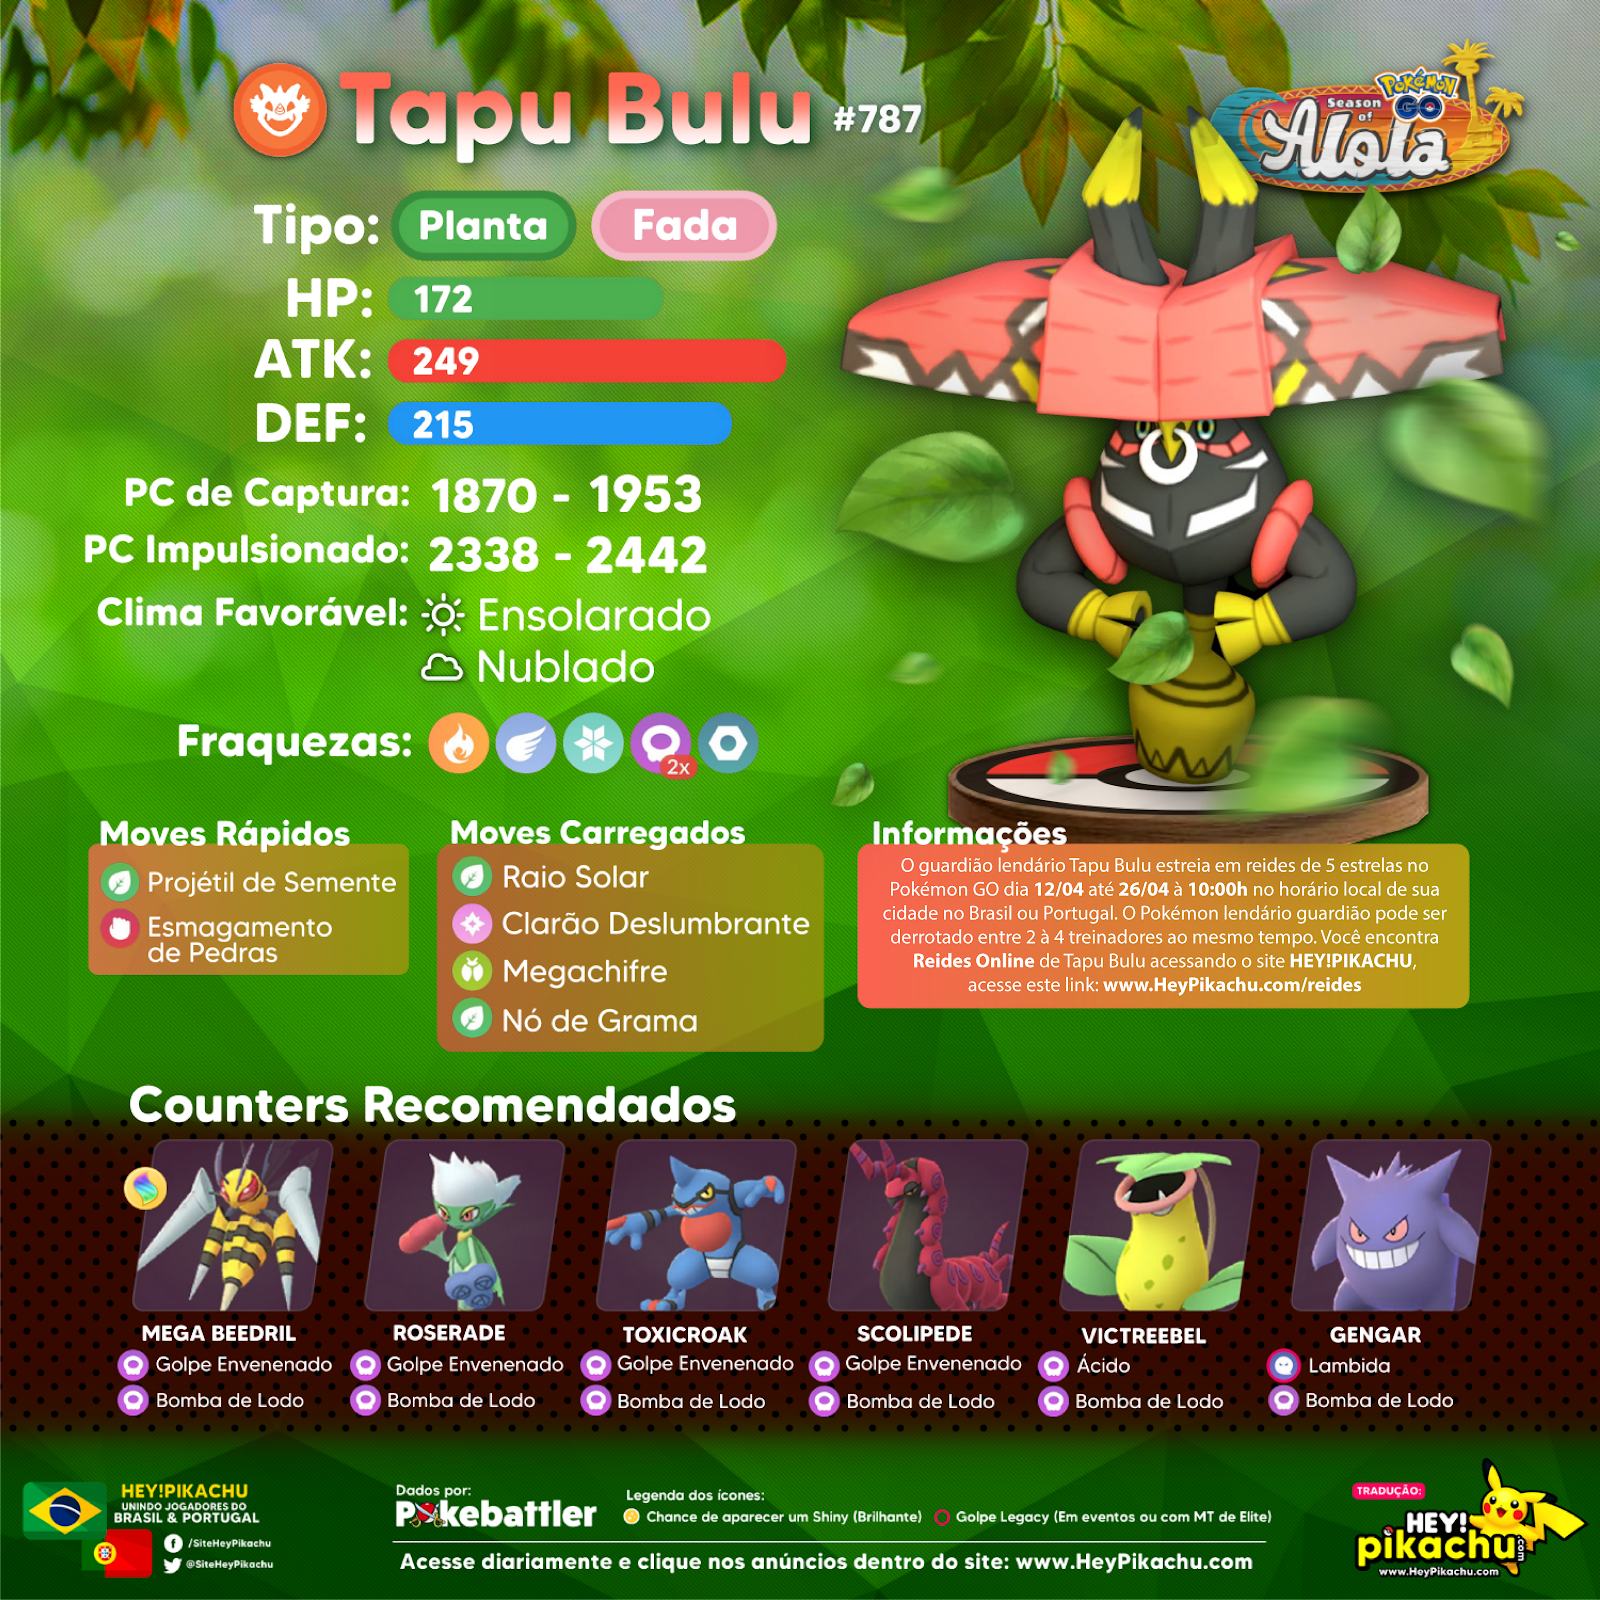 Jogada Excelente - Pokémon GO: Tapu Fini será o próximo Chefe de Reides 5  Estrelas. Confira quais são os Pokémon recomendados para enfrentá-lo e se  prepare! Data: 10/05 às 10h a 01/06